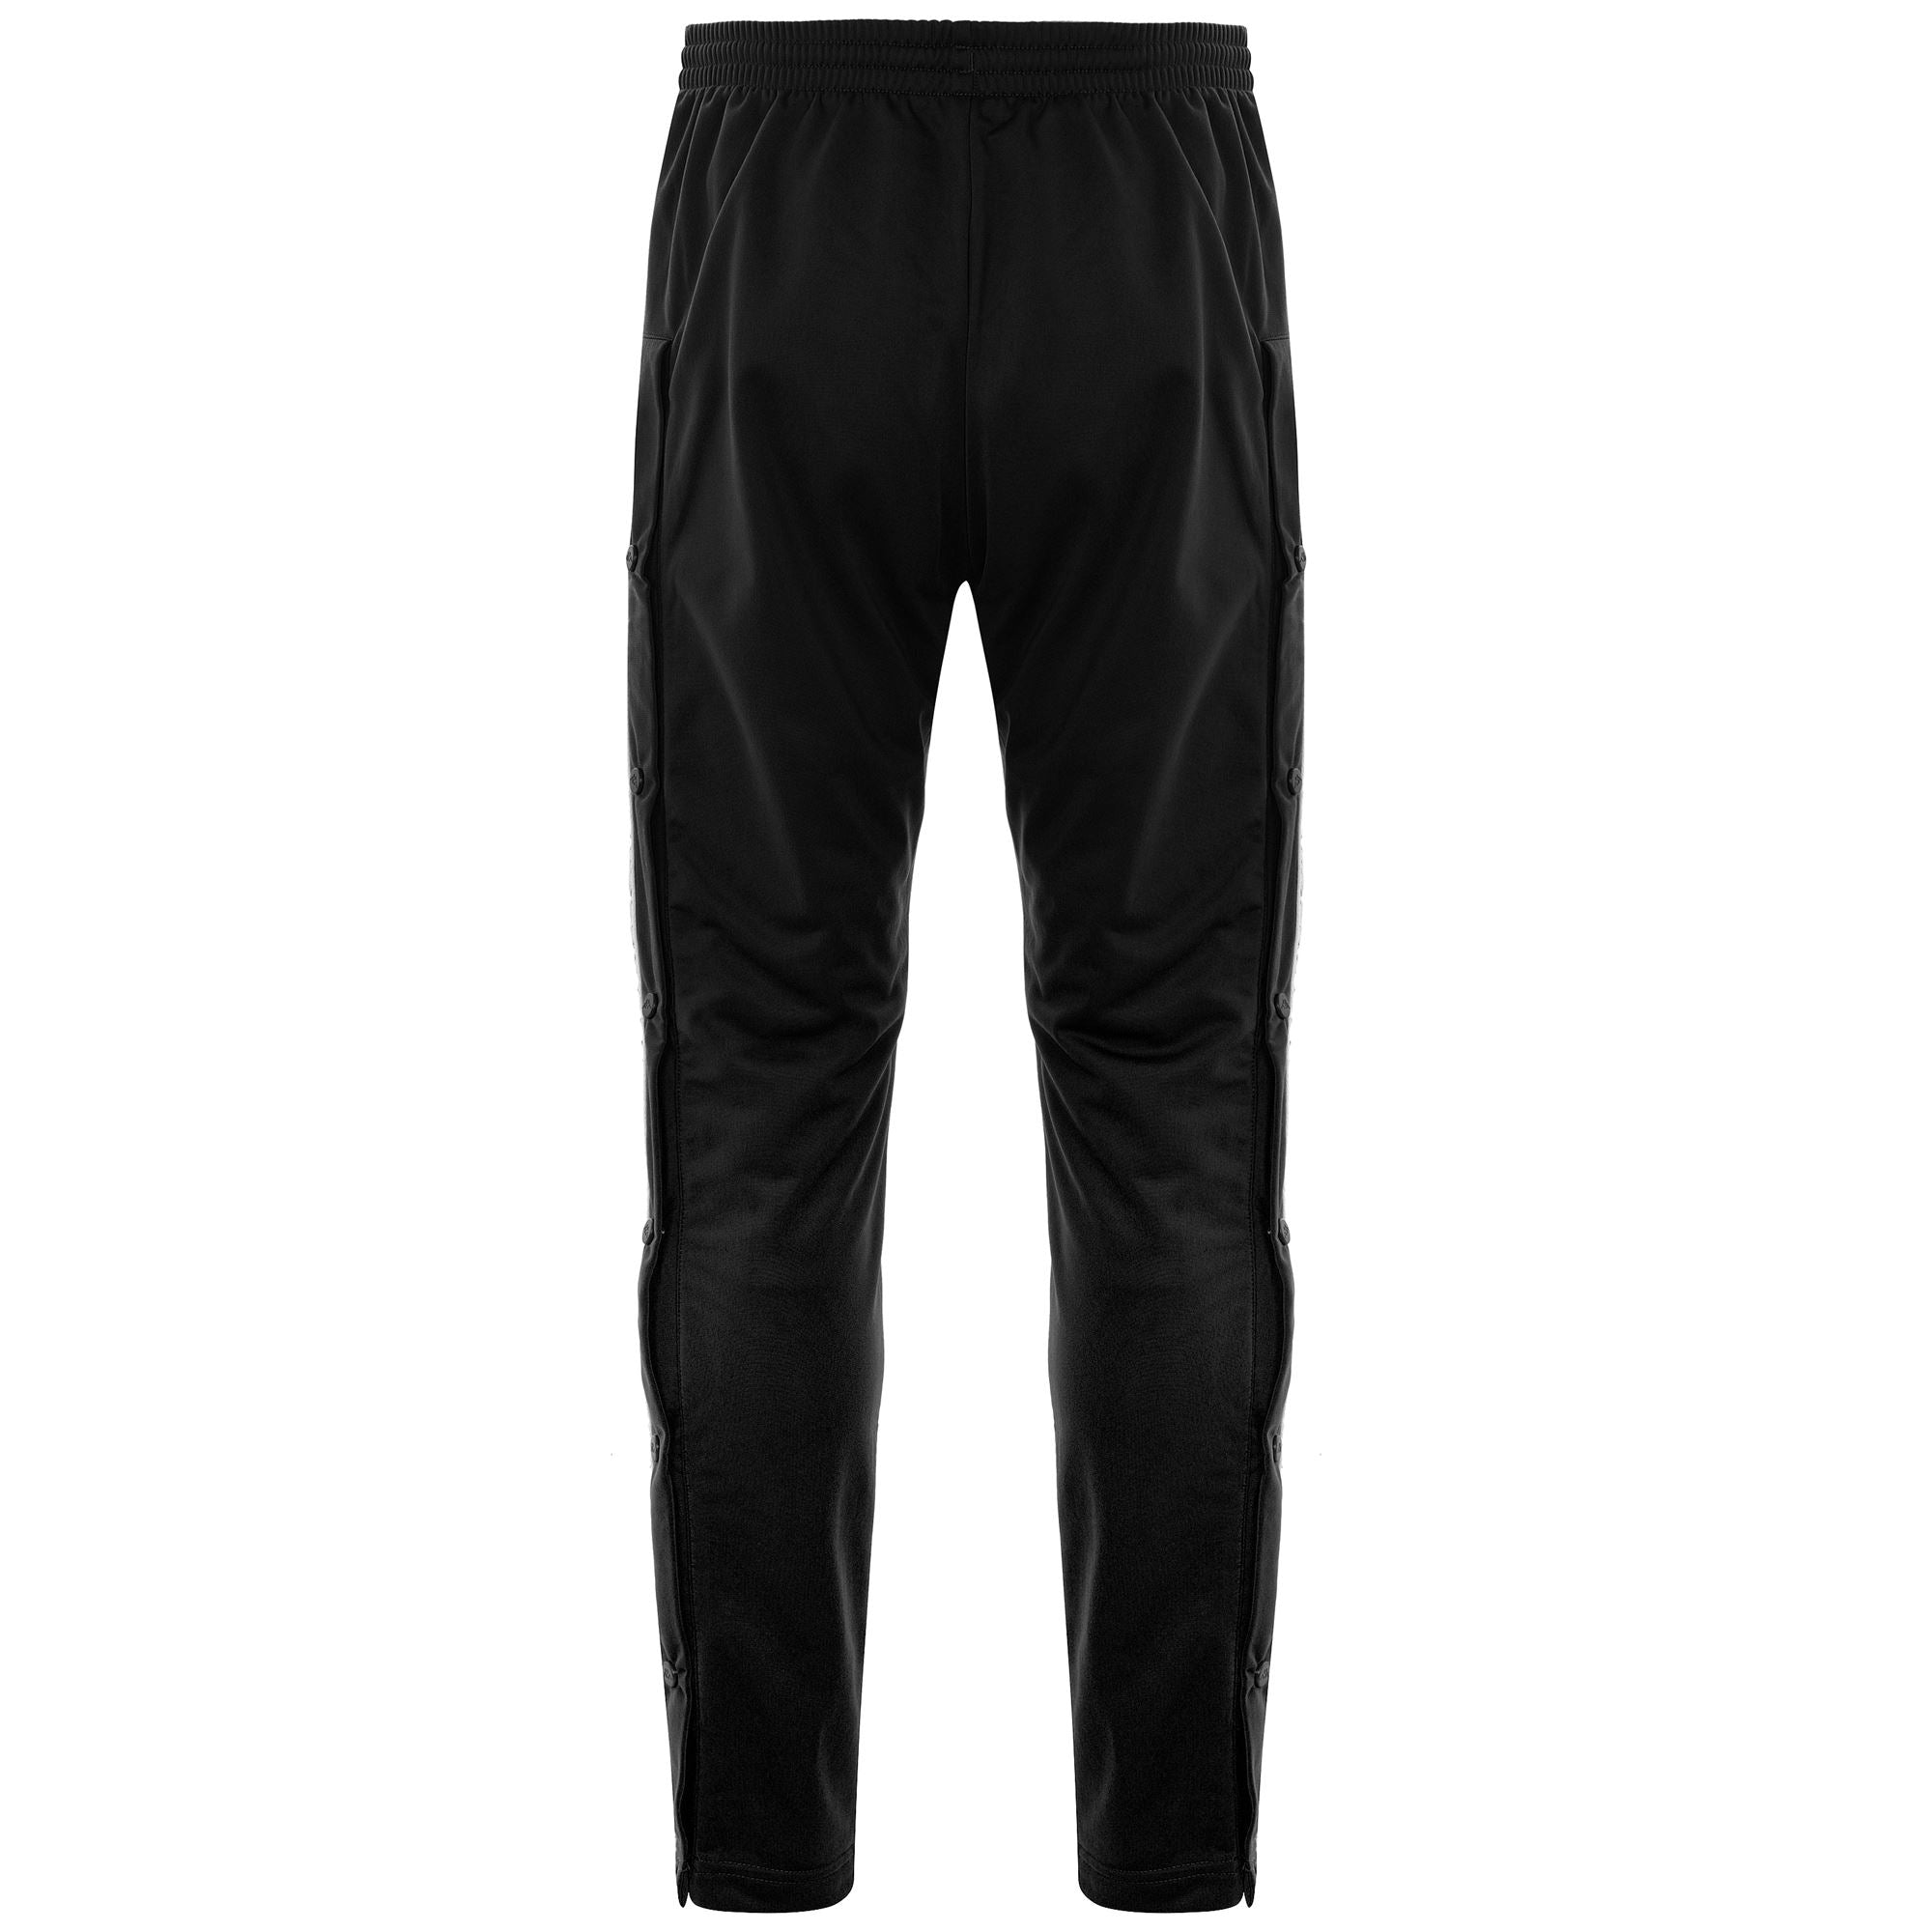 Kappa 222 Banda Astoria Slim Pant Black/Black  Kappa clothing, Mens  outfits, Streetwear fashion